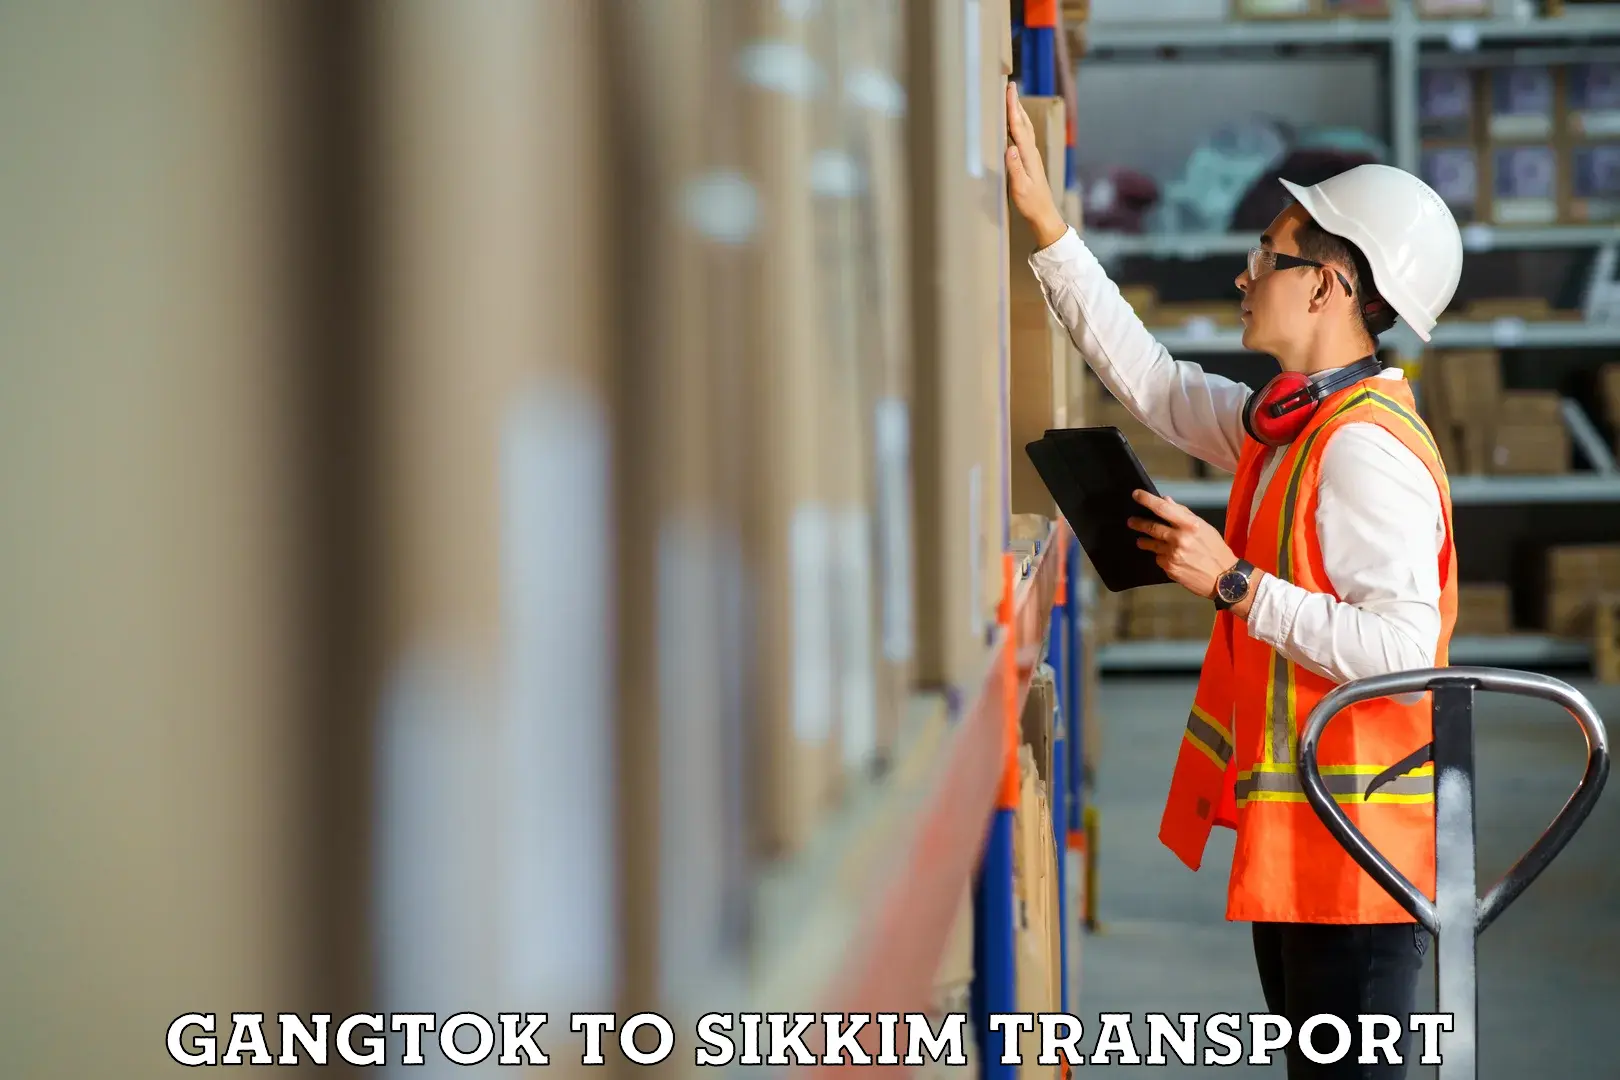 Shipping partner Gangtok to Sikkim